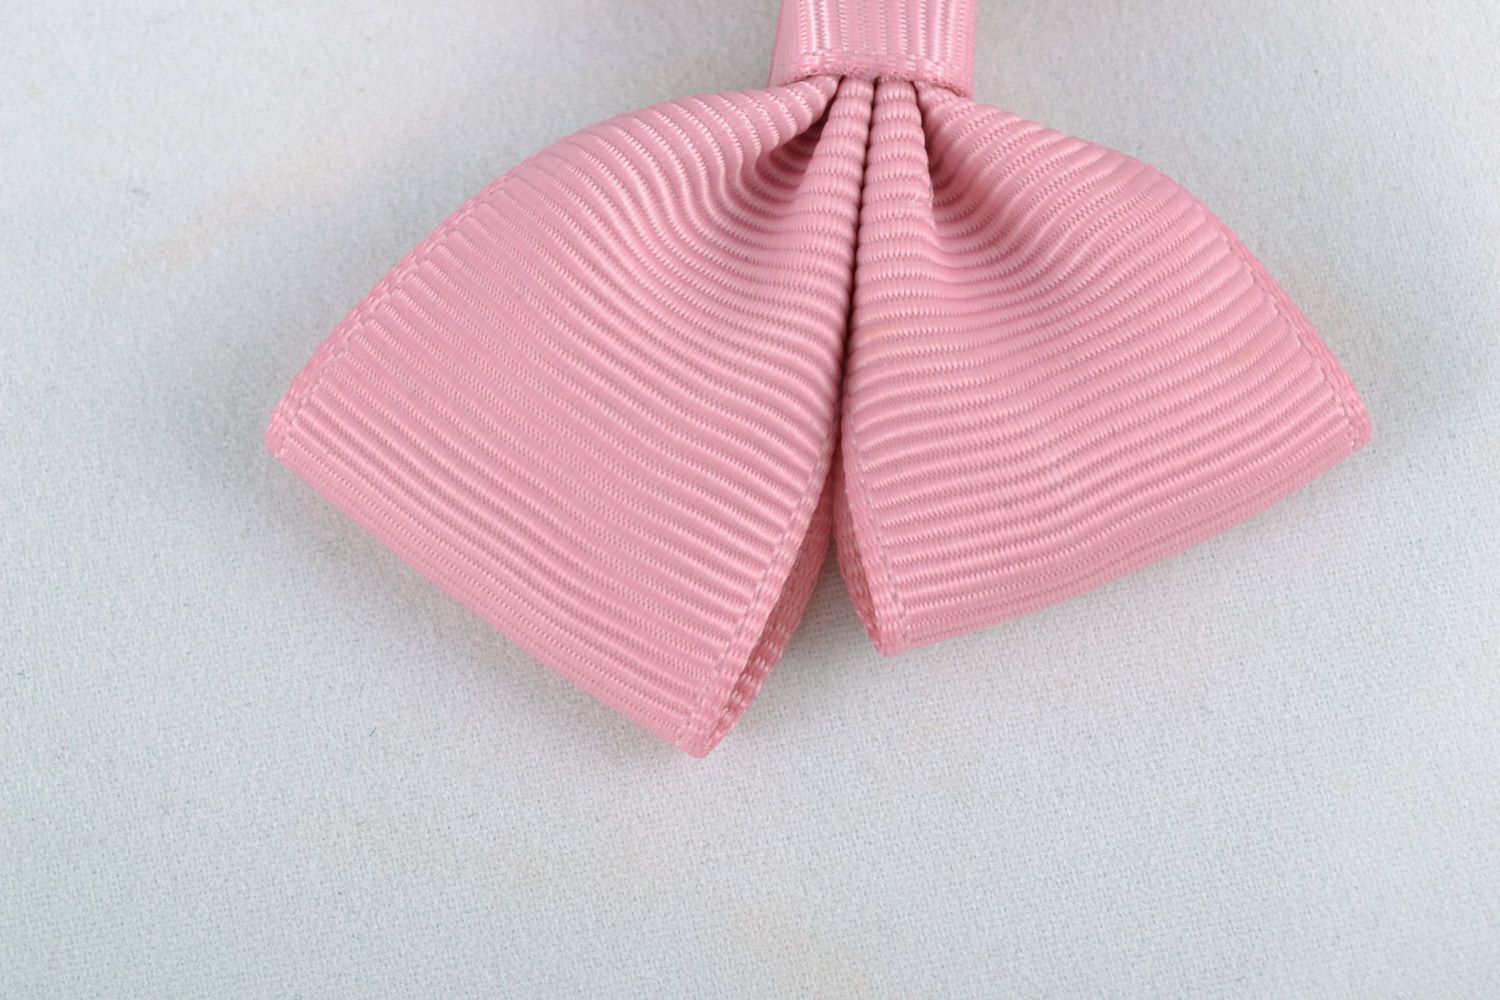 Noeuds en rubans de reps faites main design original couleur rose 2 pièces photo 4